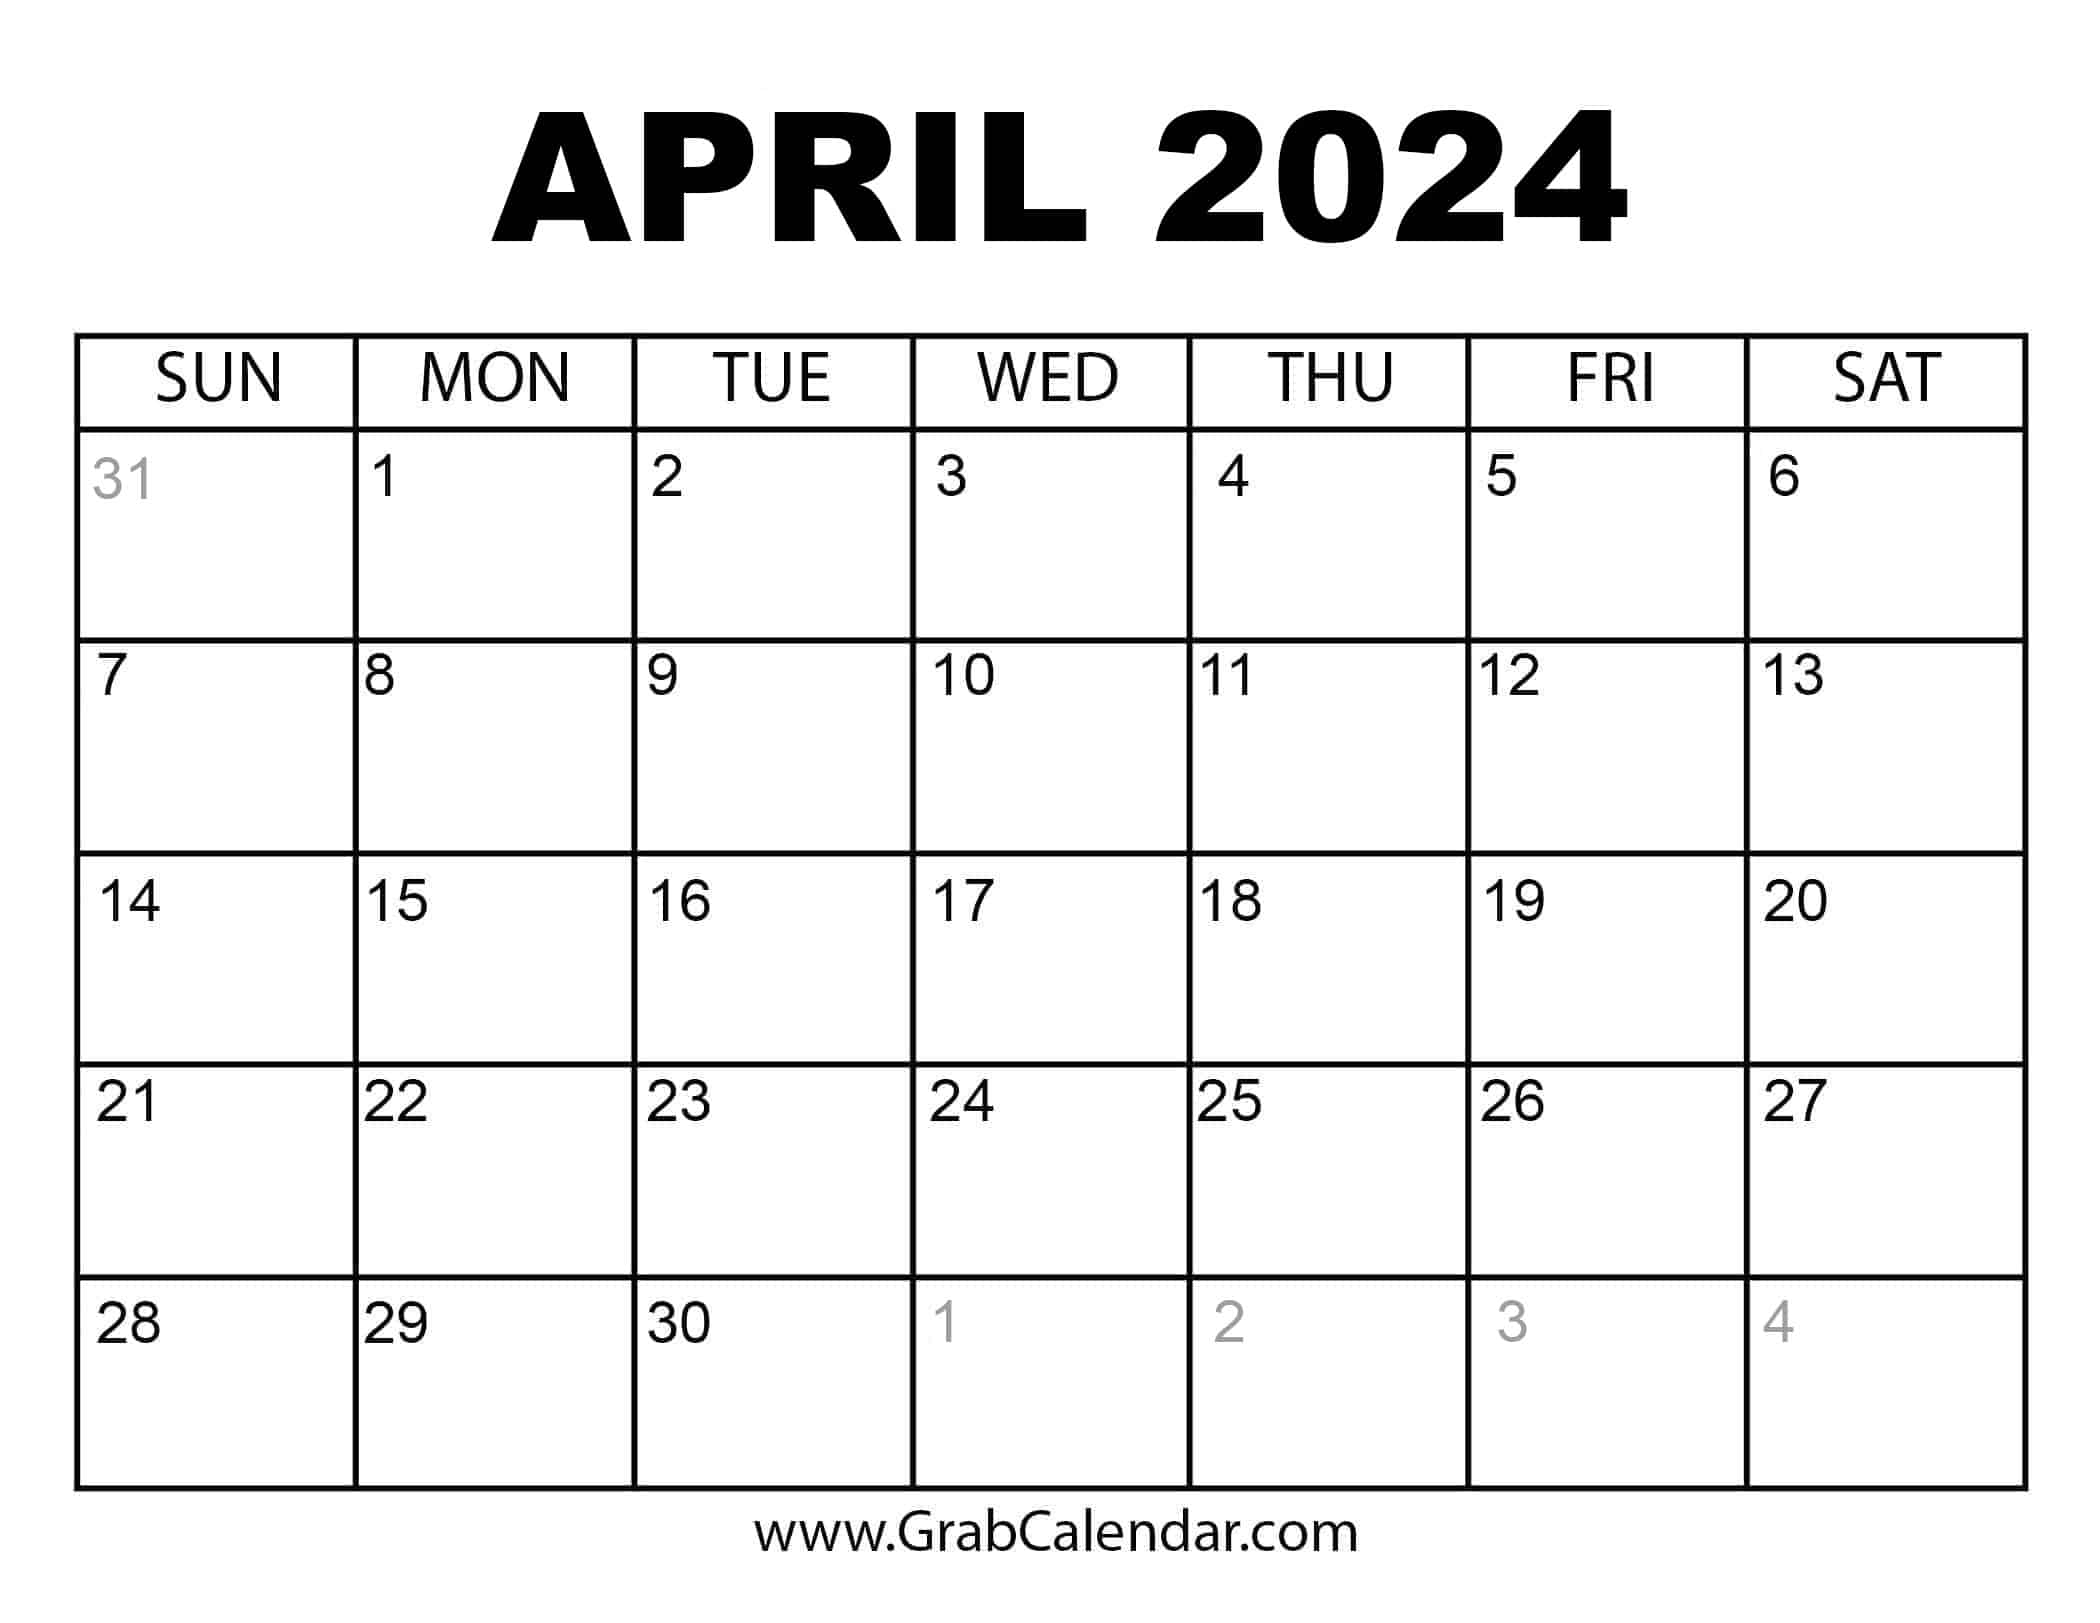 Printable April 2024 Calendar regarding April 1 2024 Calendar